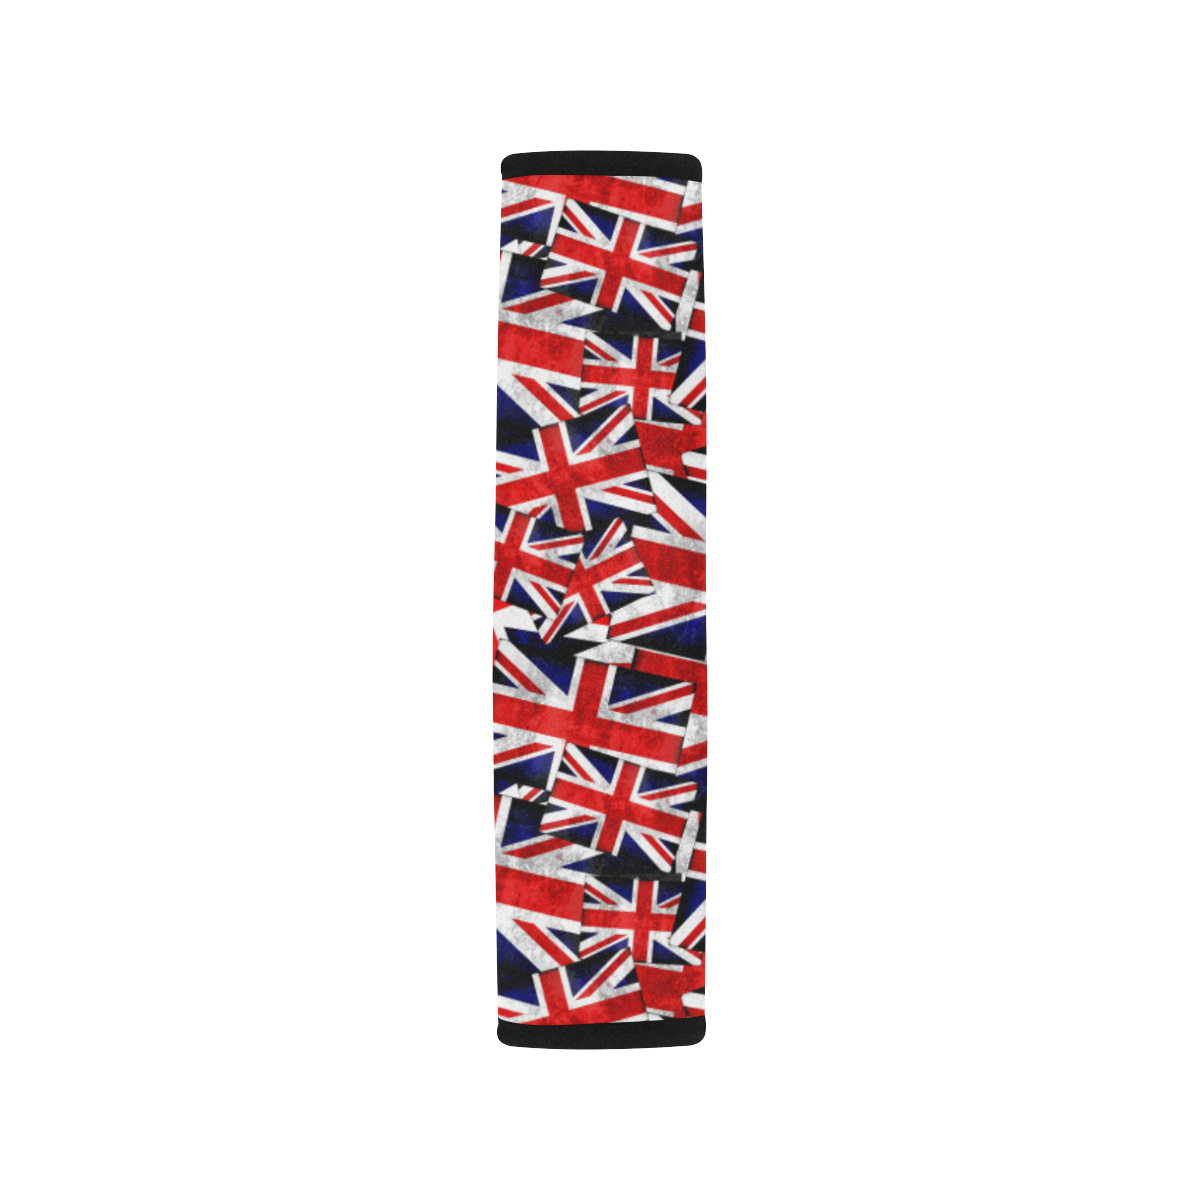 Union Jack British UK Flag Car Seat Belt Cover 7''x10''